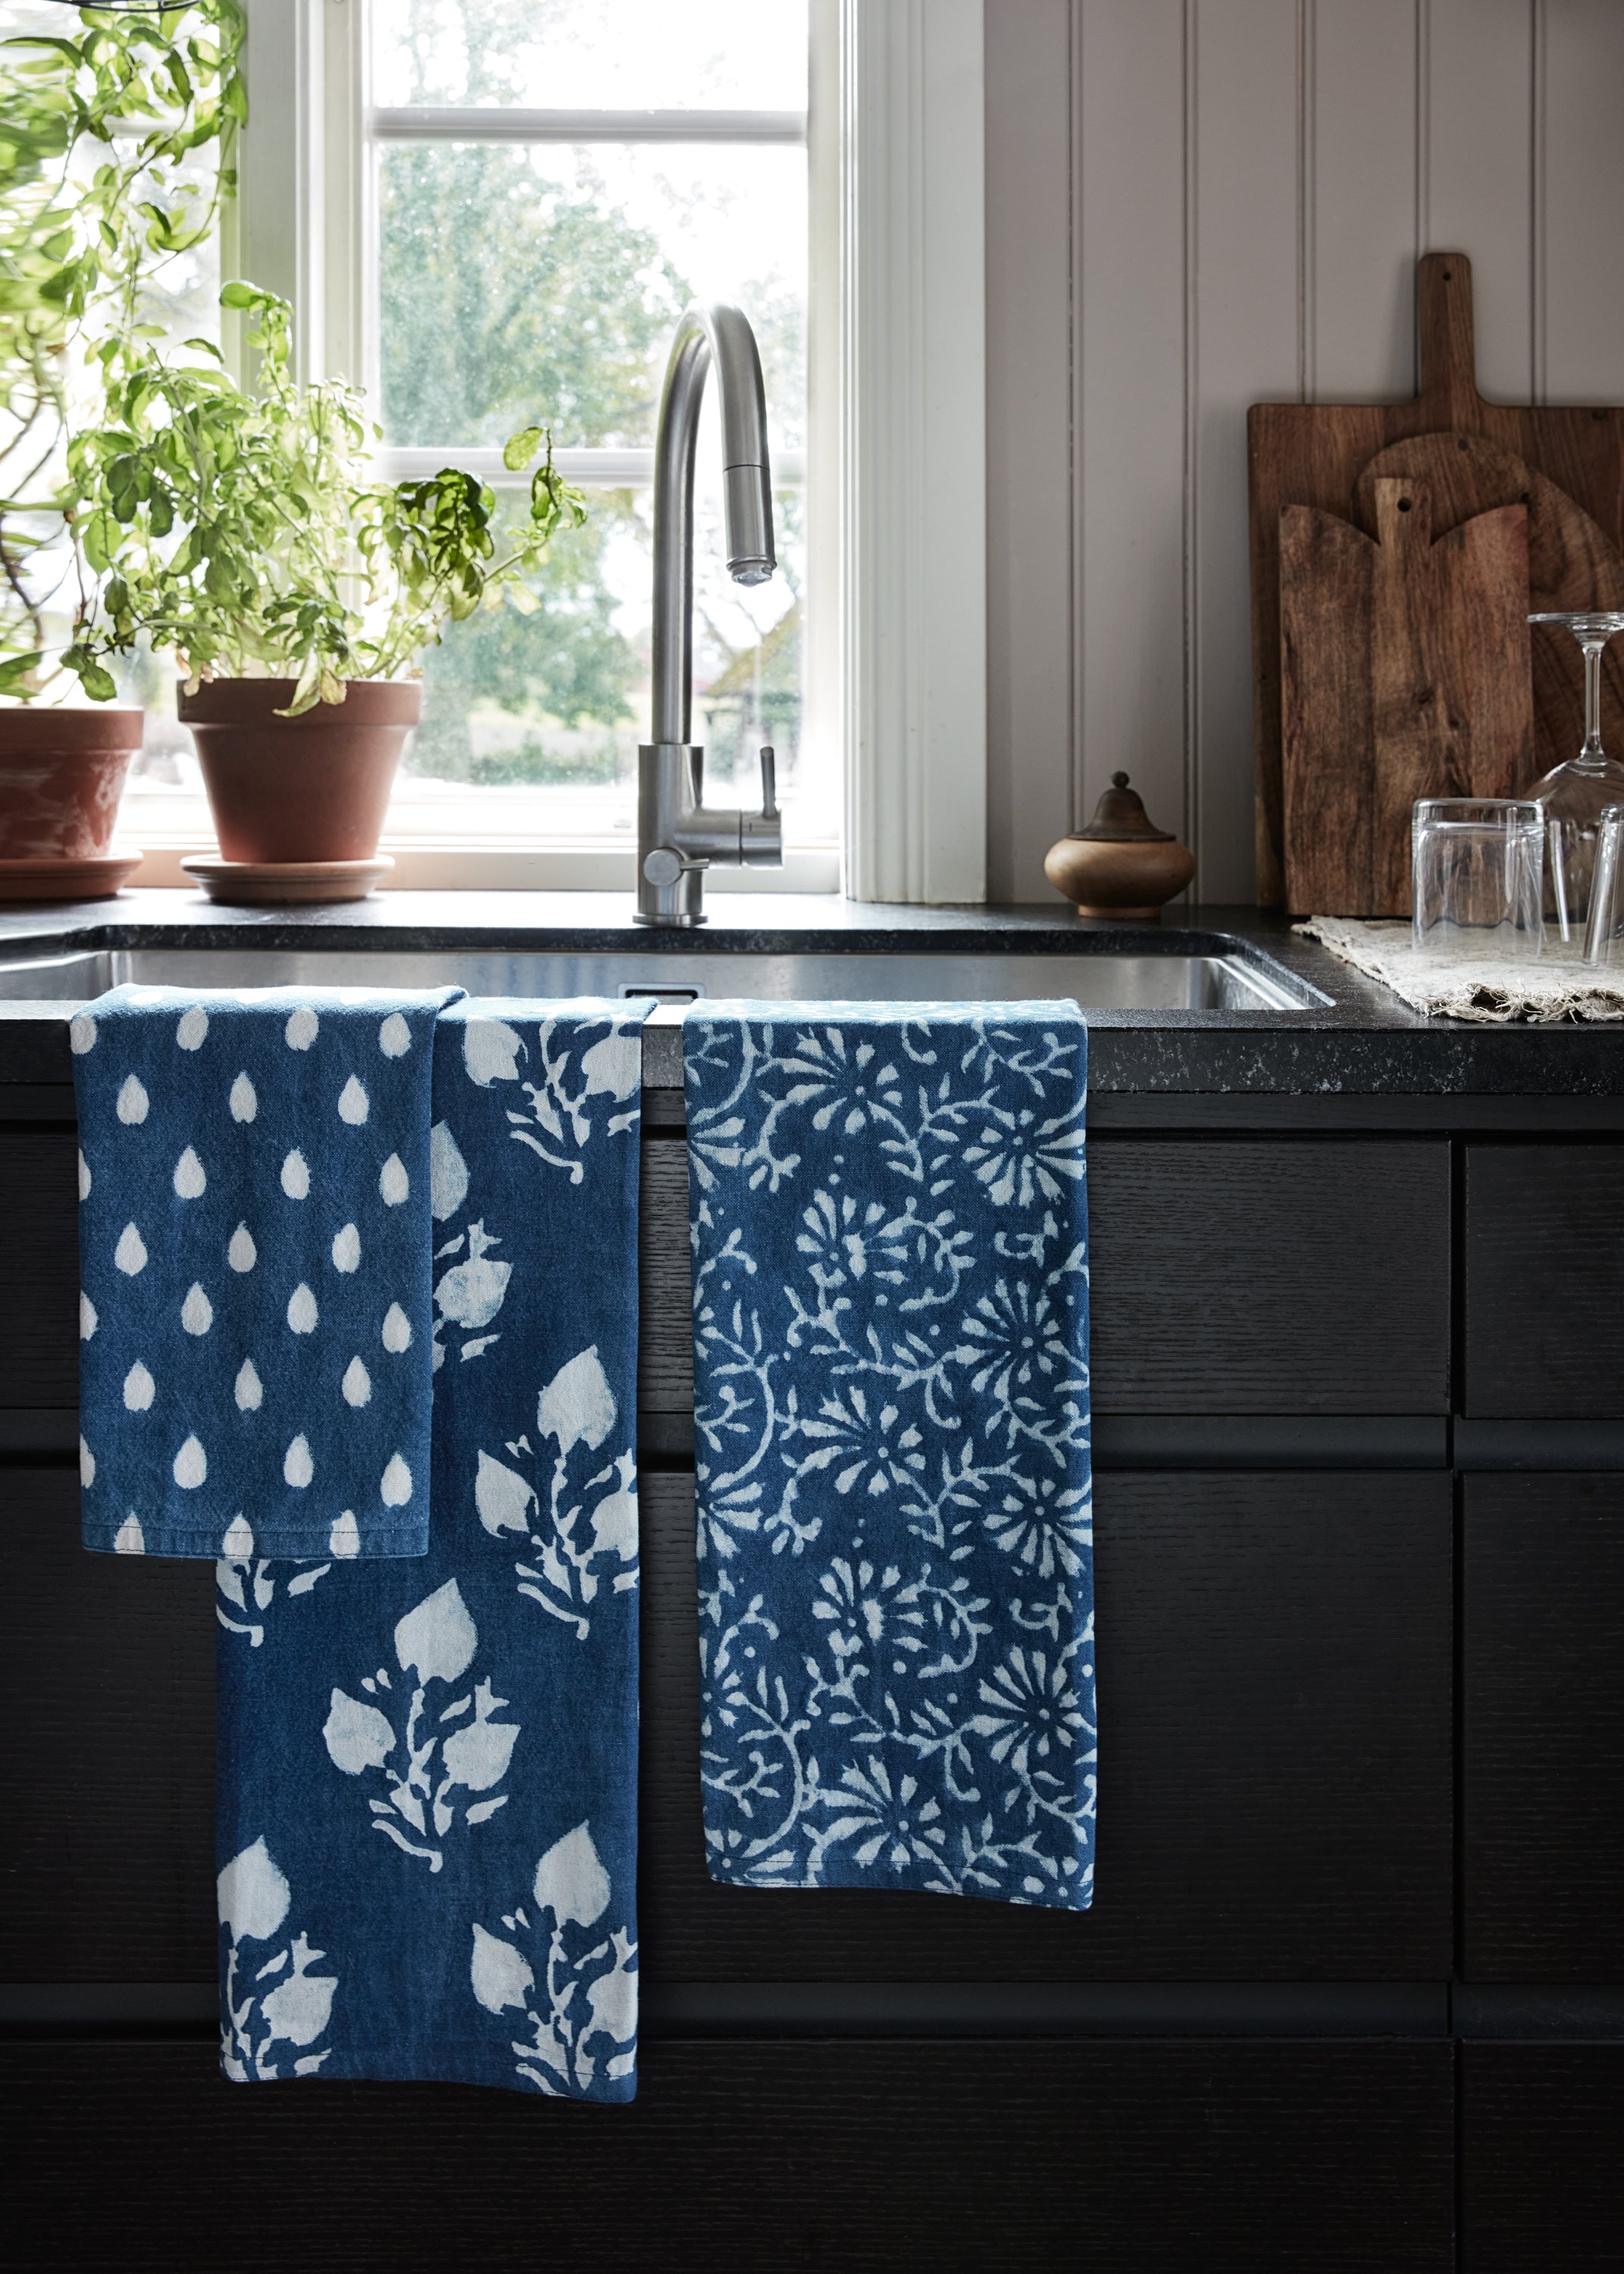 Leaf kitchen towels in Indigo